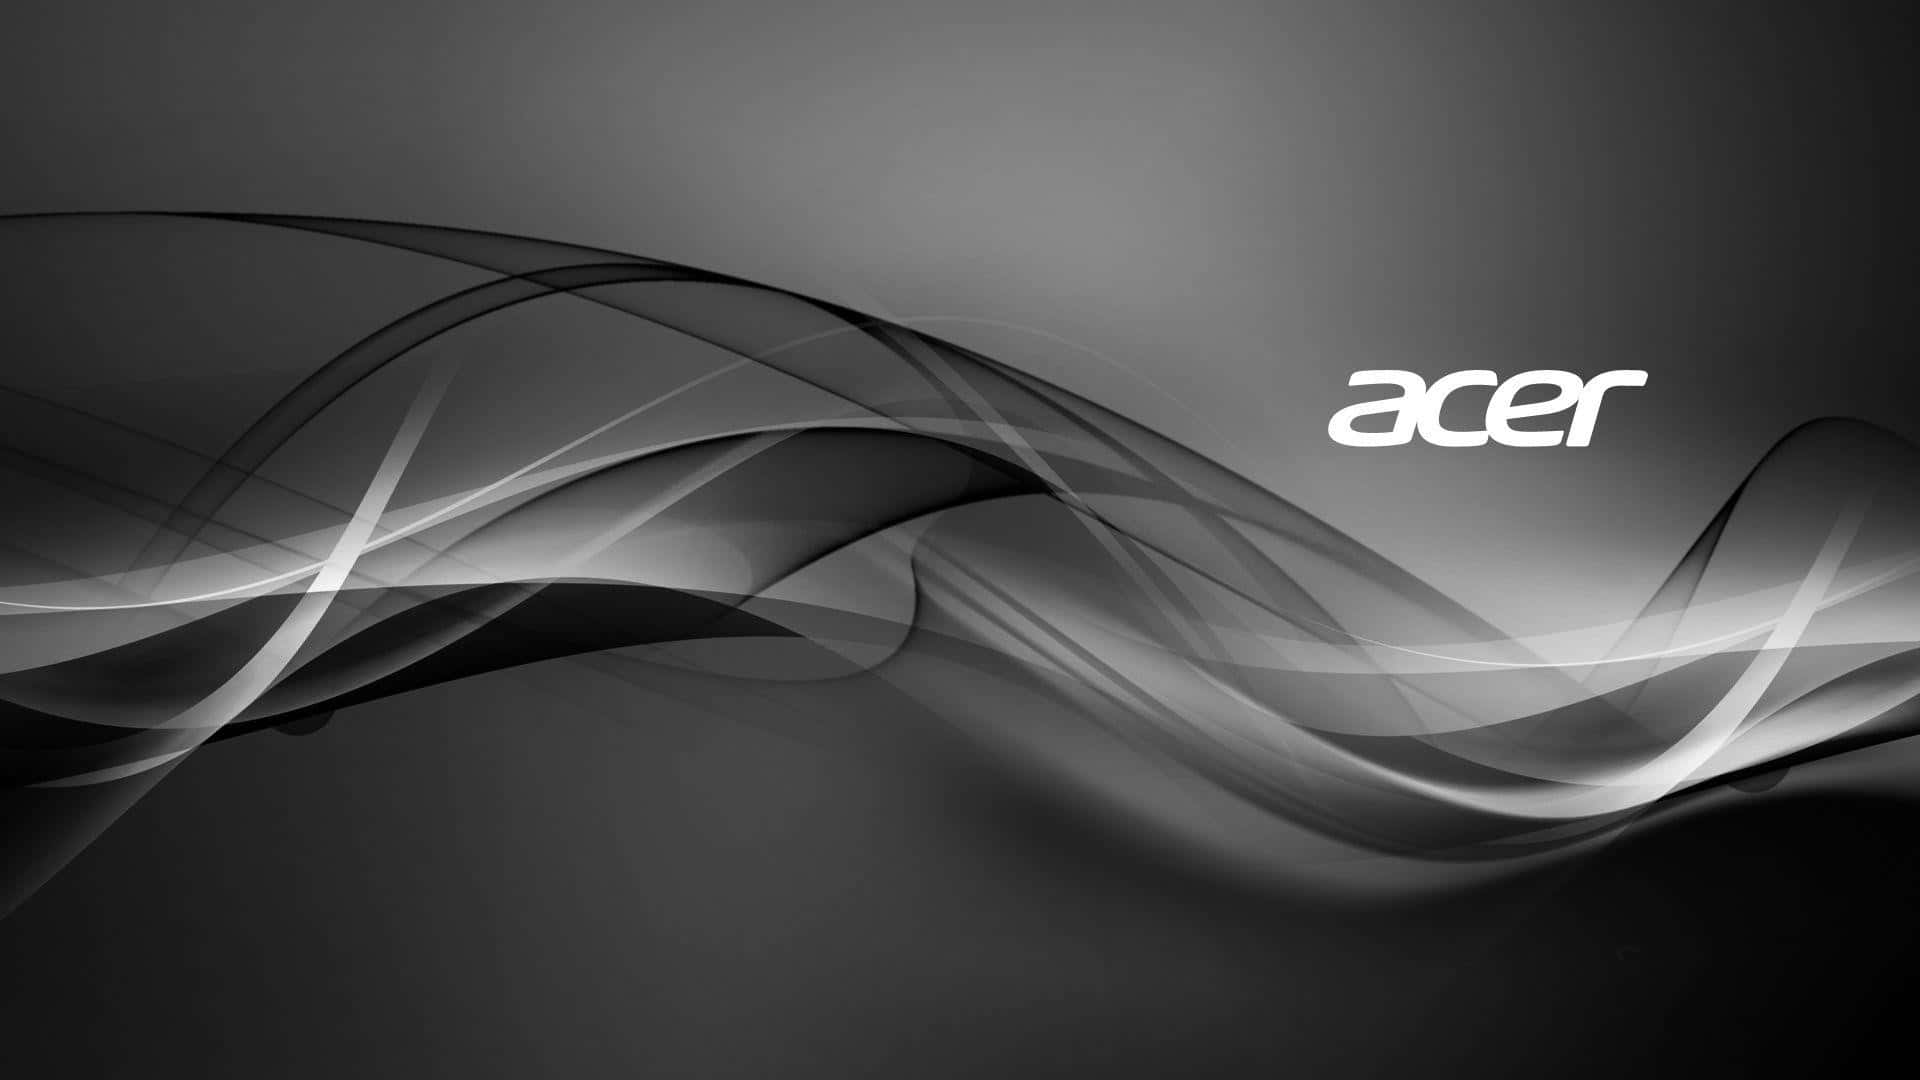 Acer Logo On A Black Background Wallpaper